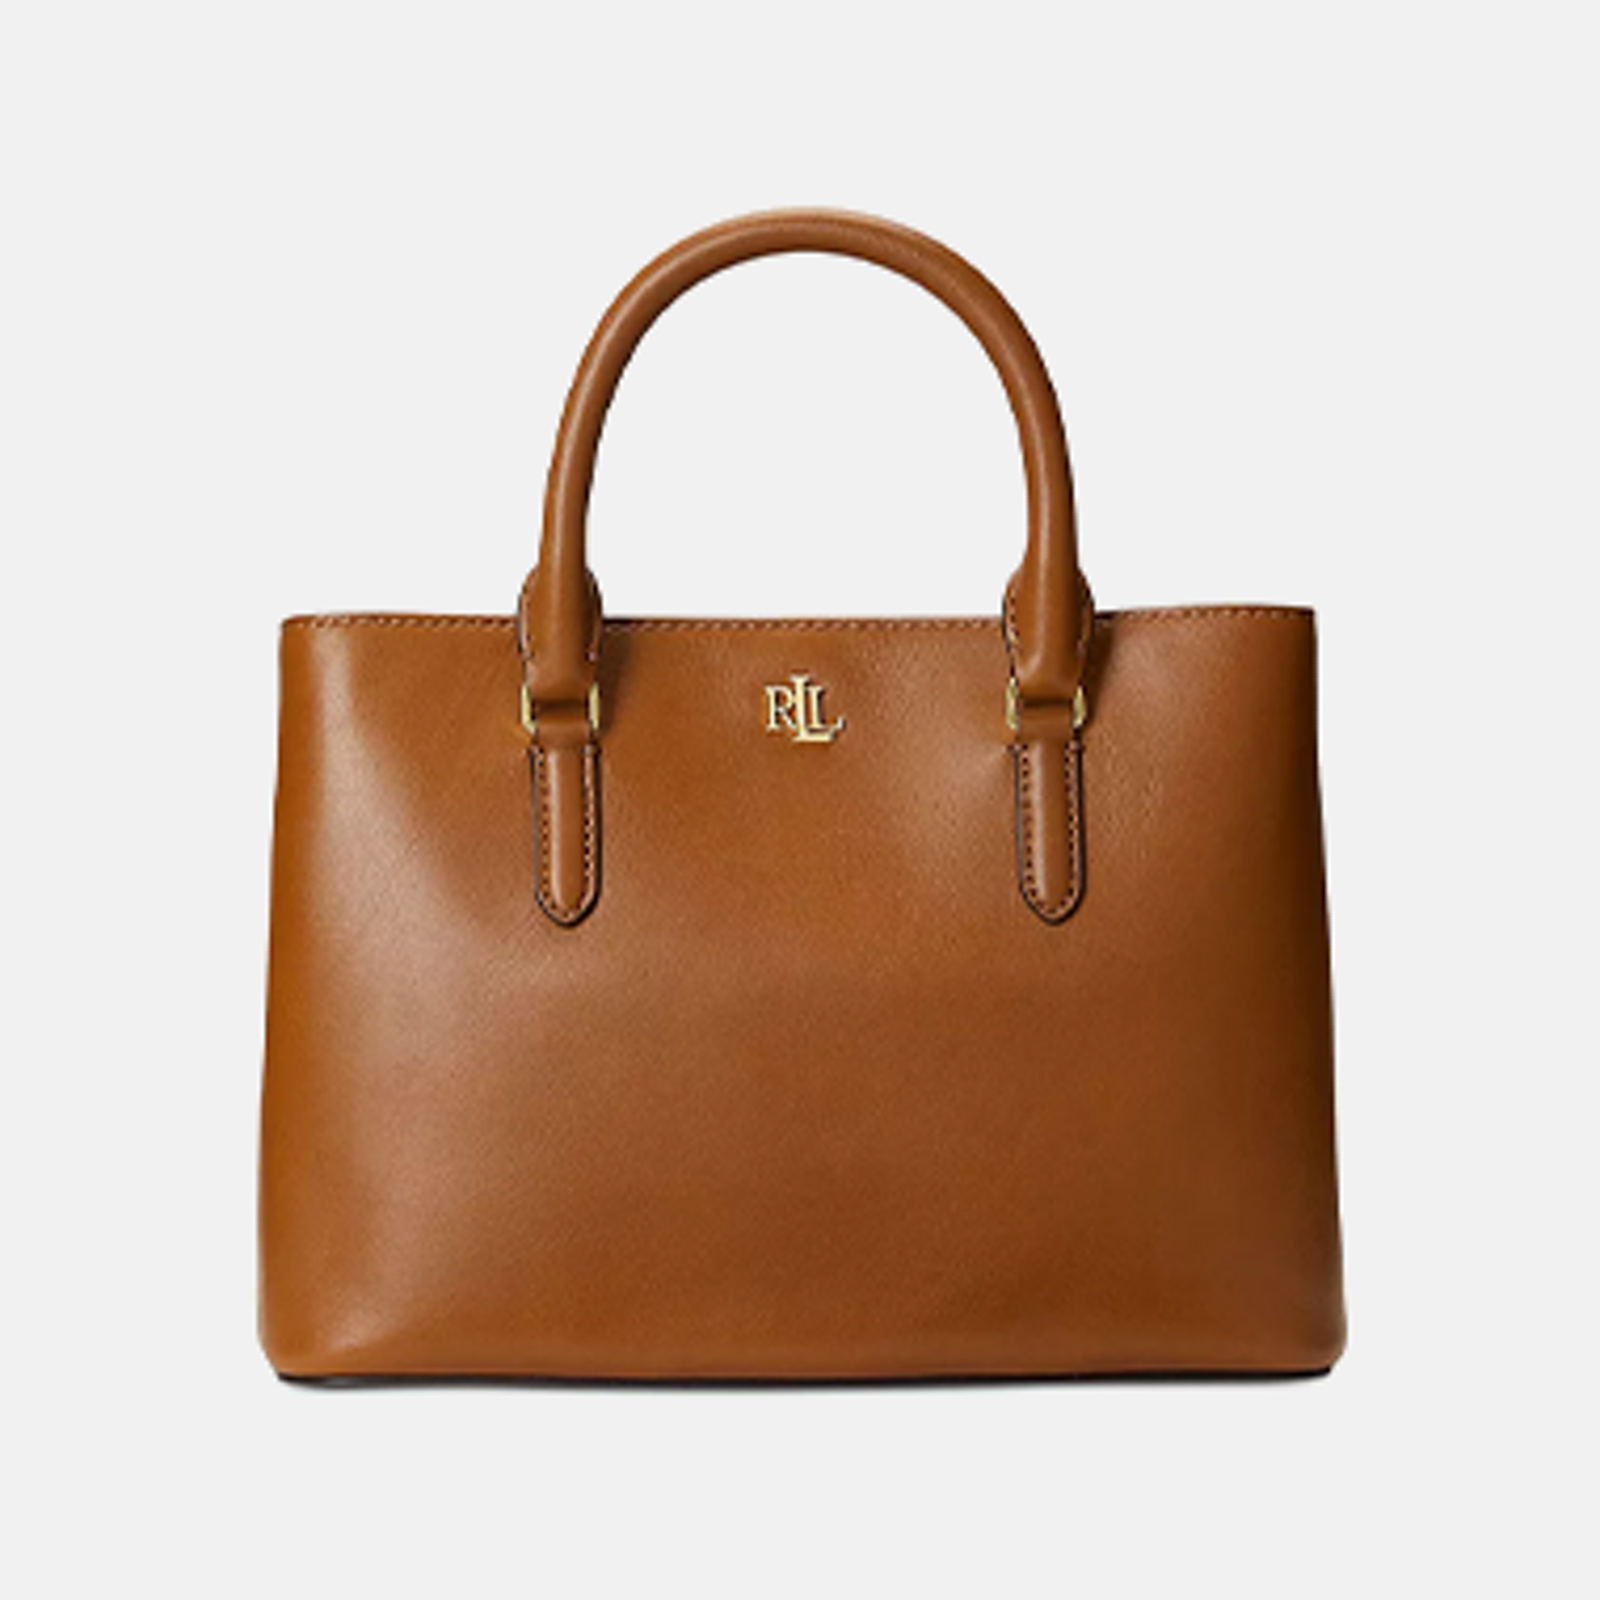 NEW Large Leather Tote Orange Bag Club Wear Shoulder Strap Big Purse  Designer